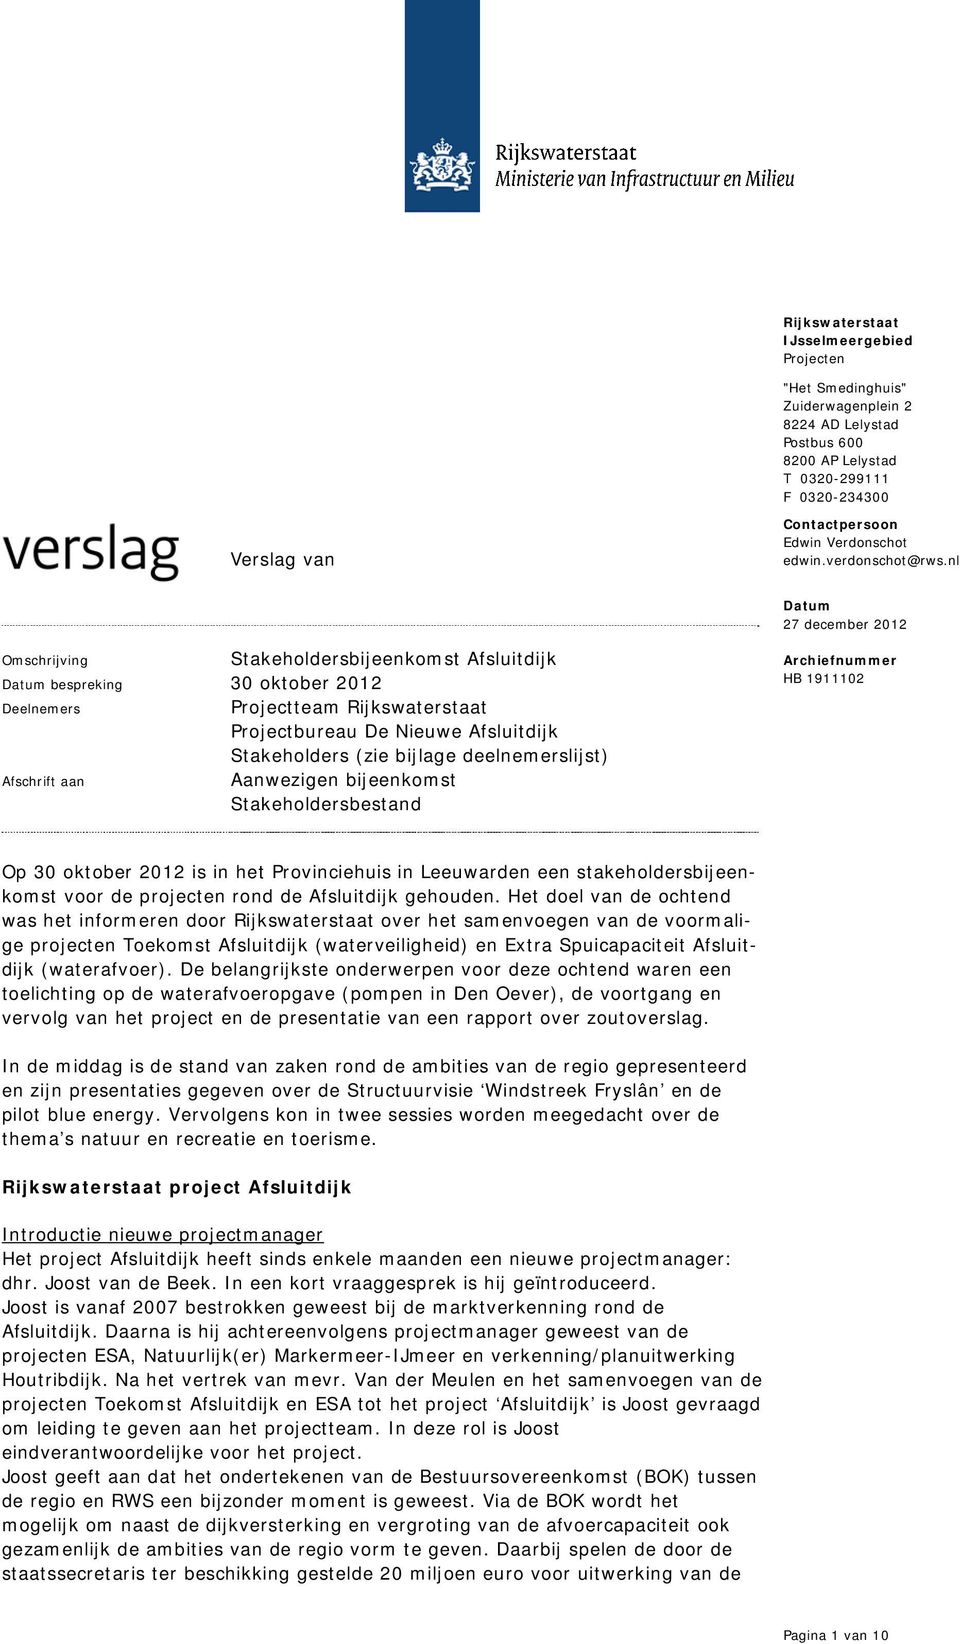 Aanwezigen bijeenkomst Stakeholdersbestand Archiefnummer HB 1911102 Op 30 oktober 2012 is in het Provinciehuis in Leeuwarden een stakeholdersbijeenkomst voor de projecten rond de Afsluitdijk gehouden.